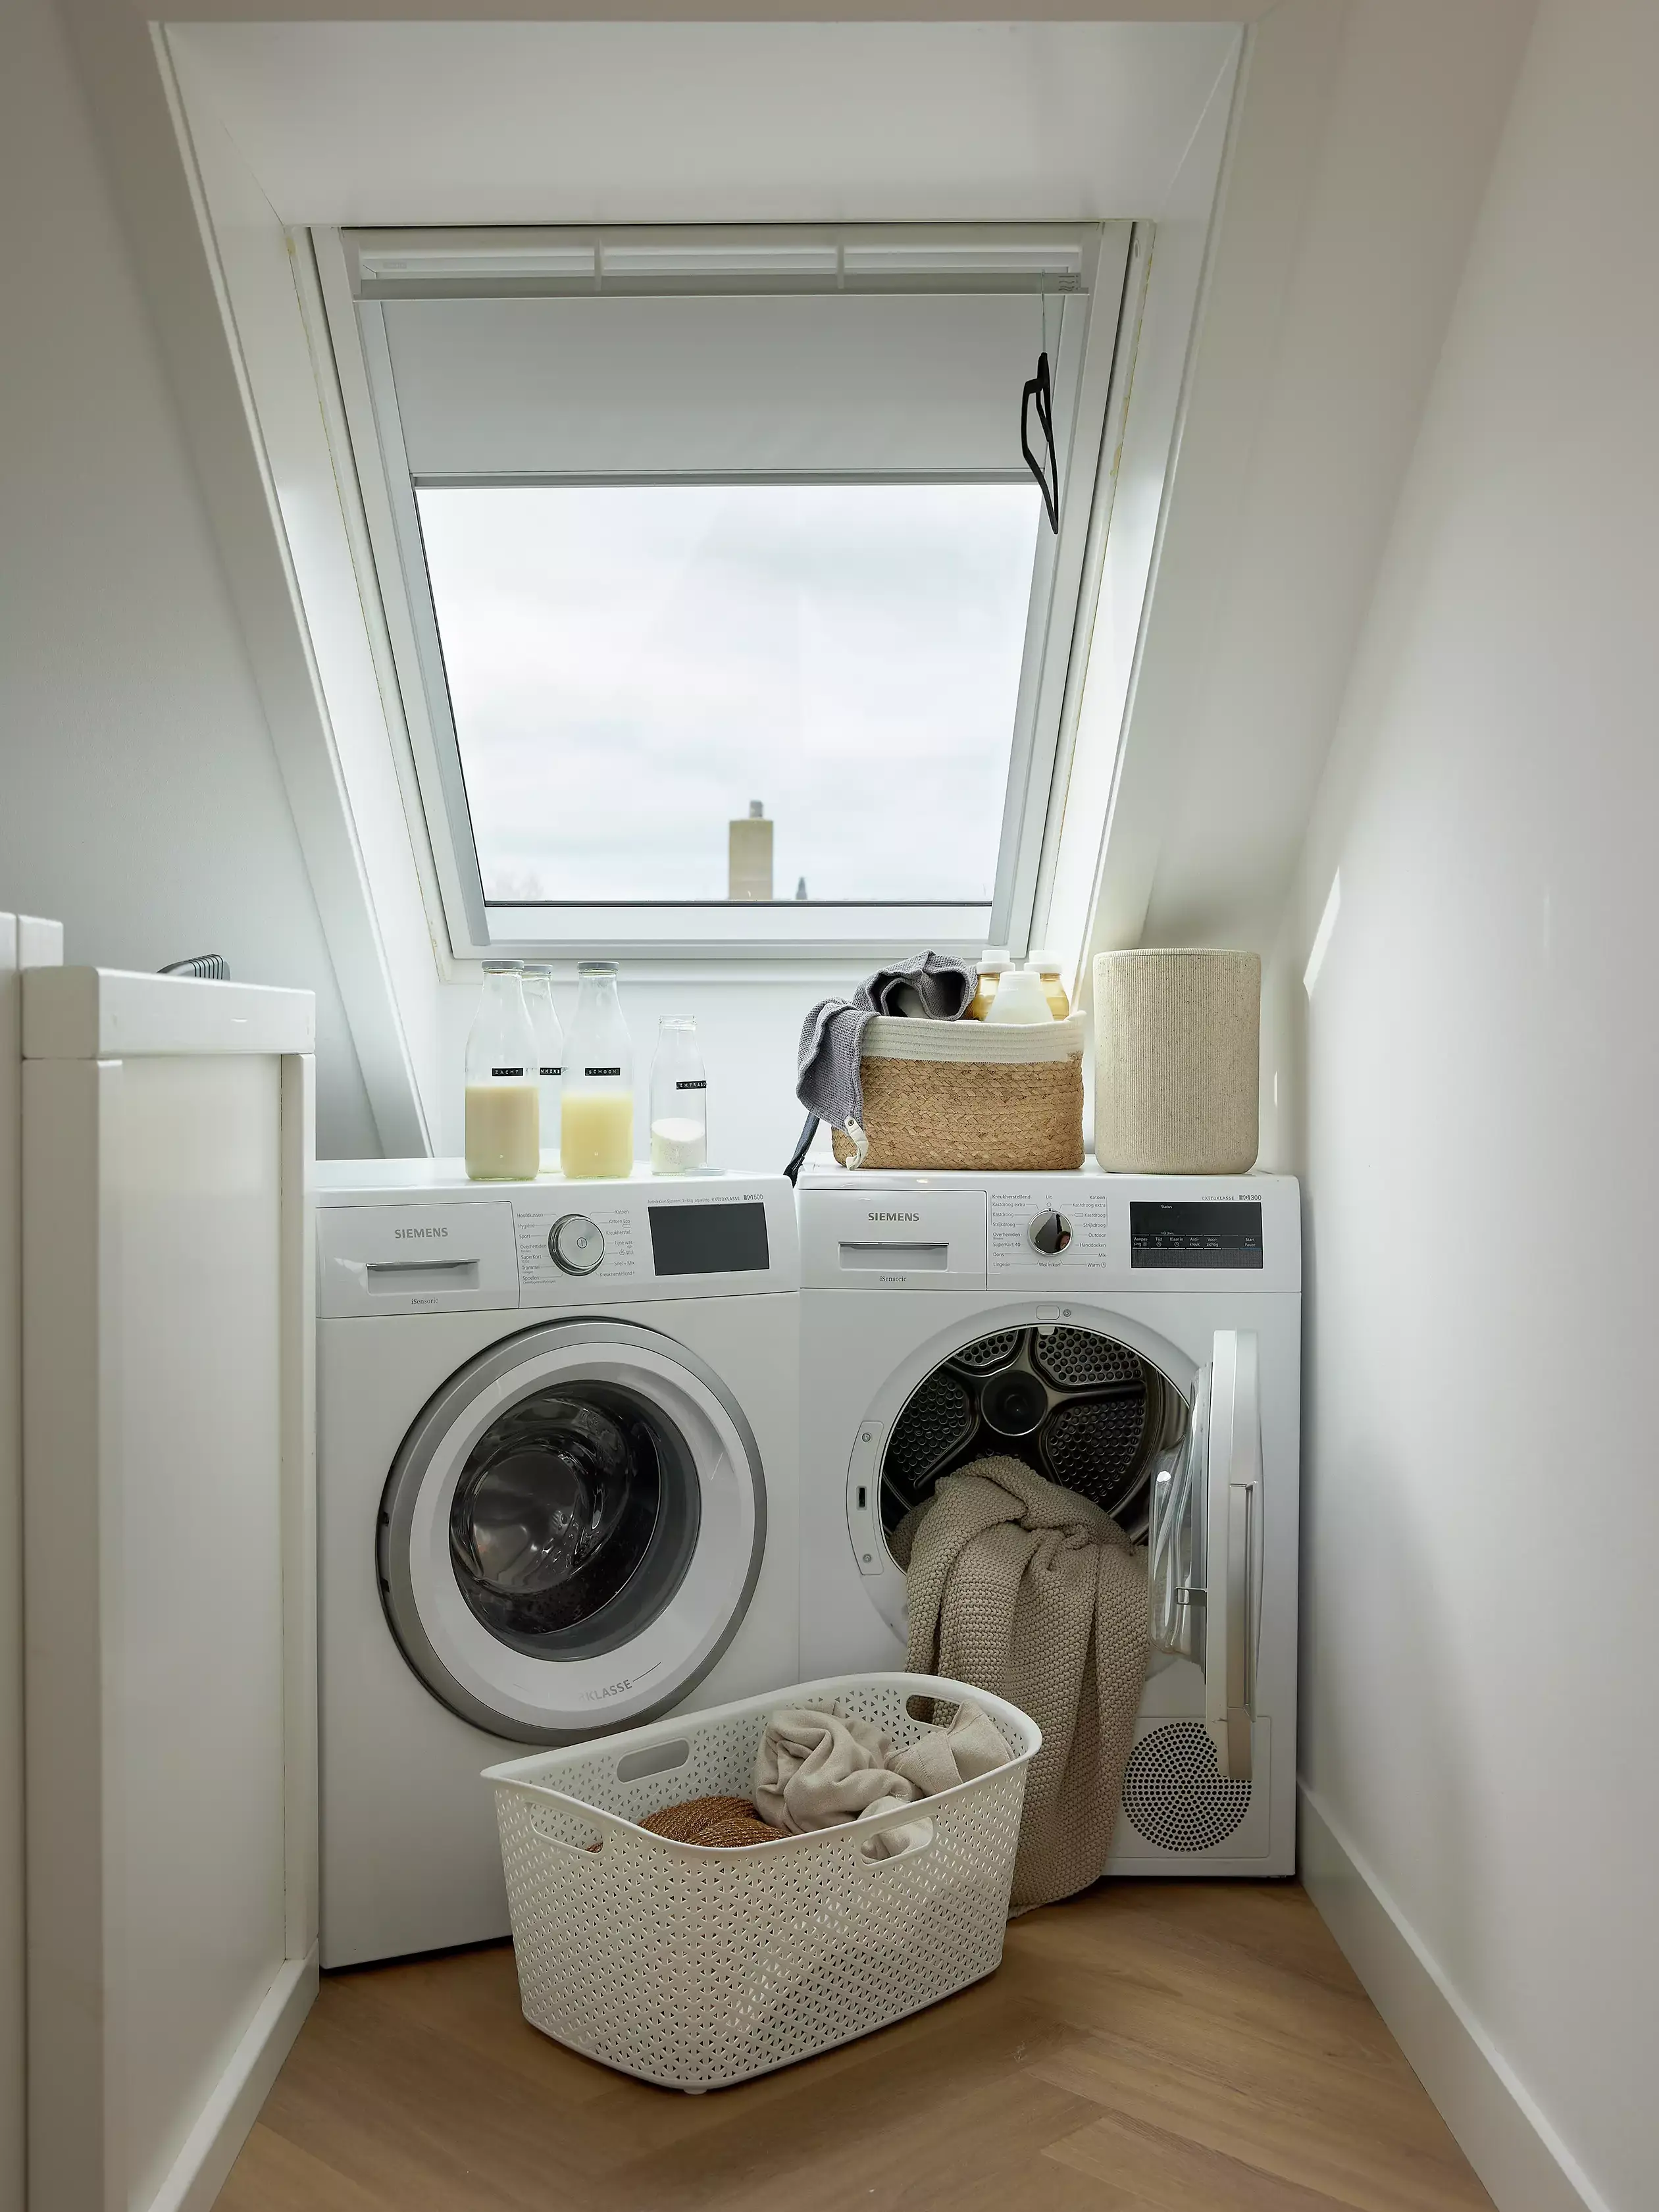 Persona in una stanza di servizio seminterrata con elettrodomestici per la lavanderia e luce naturale proveniente da una finestra.